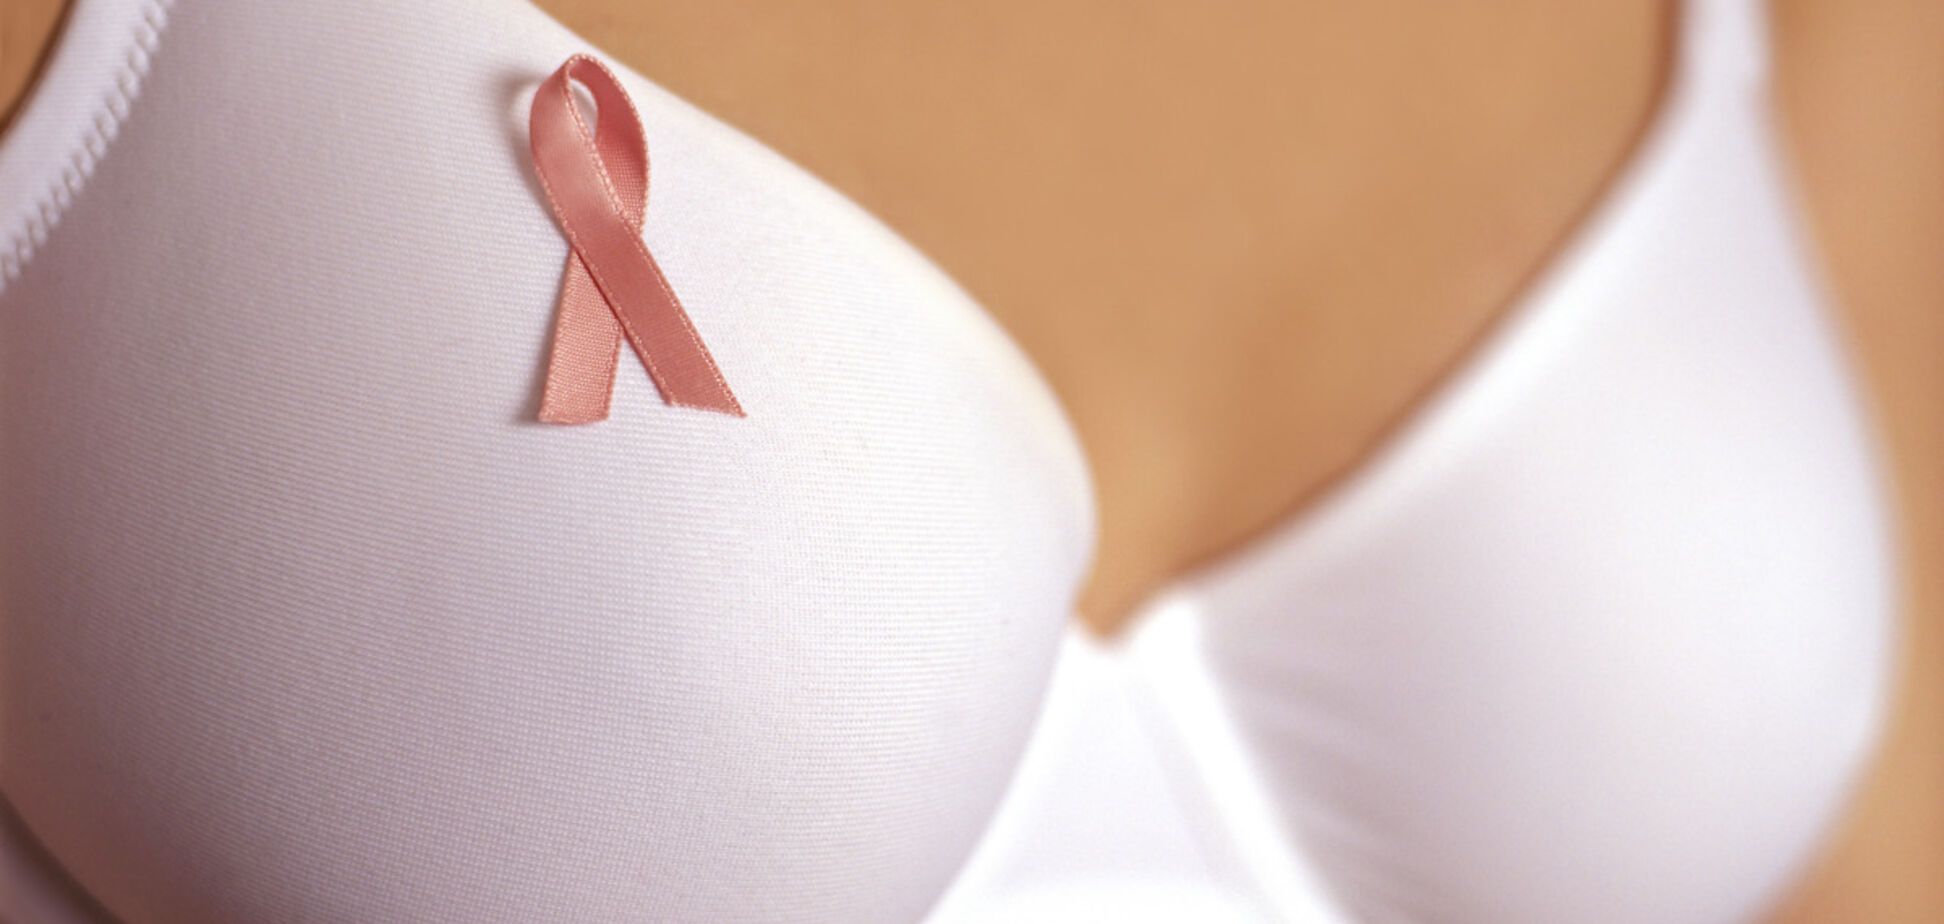 Американські вчені створили гаджет, який попереджатиме про рак грудей